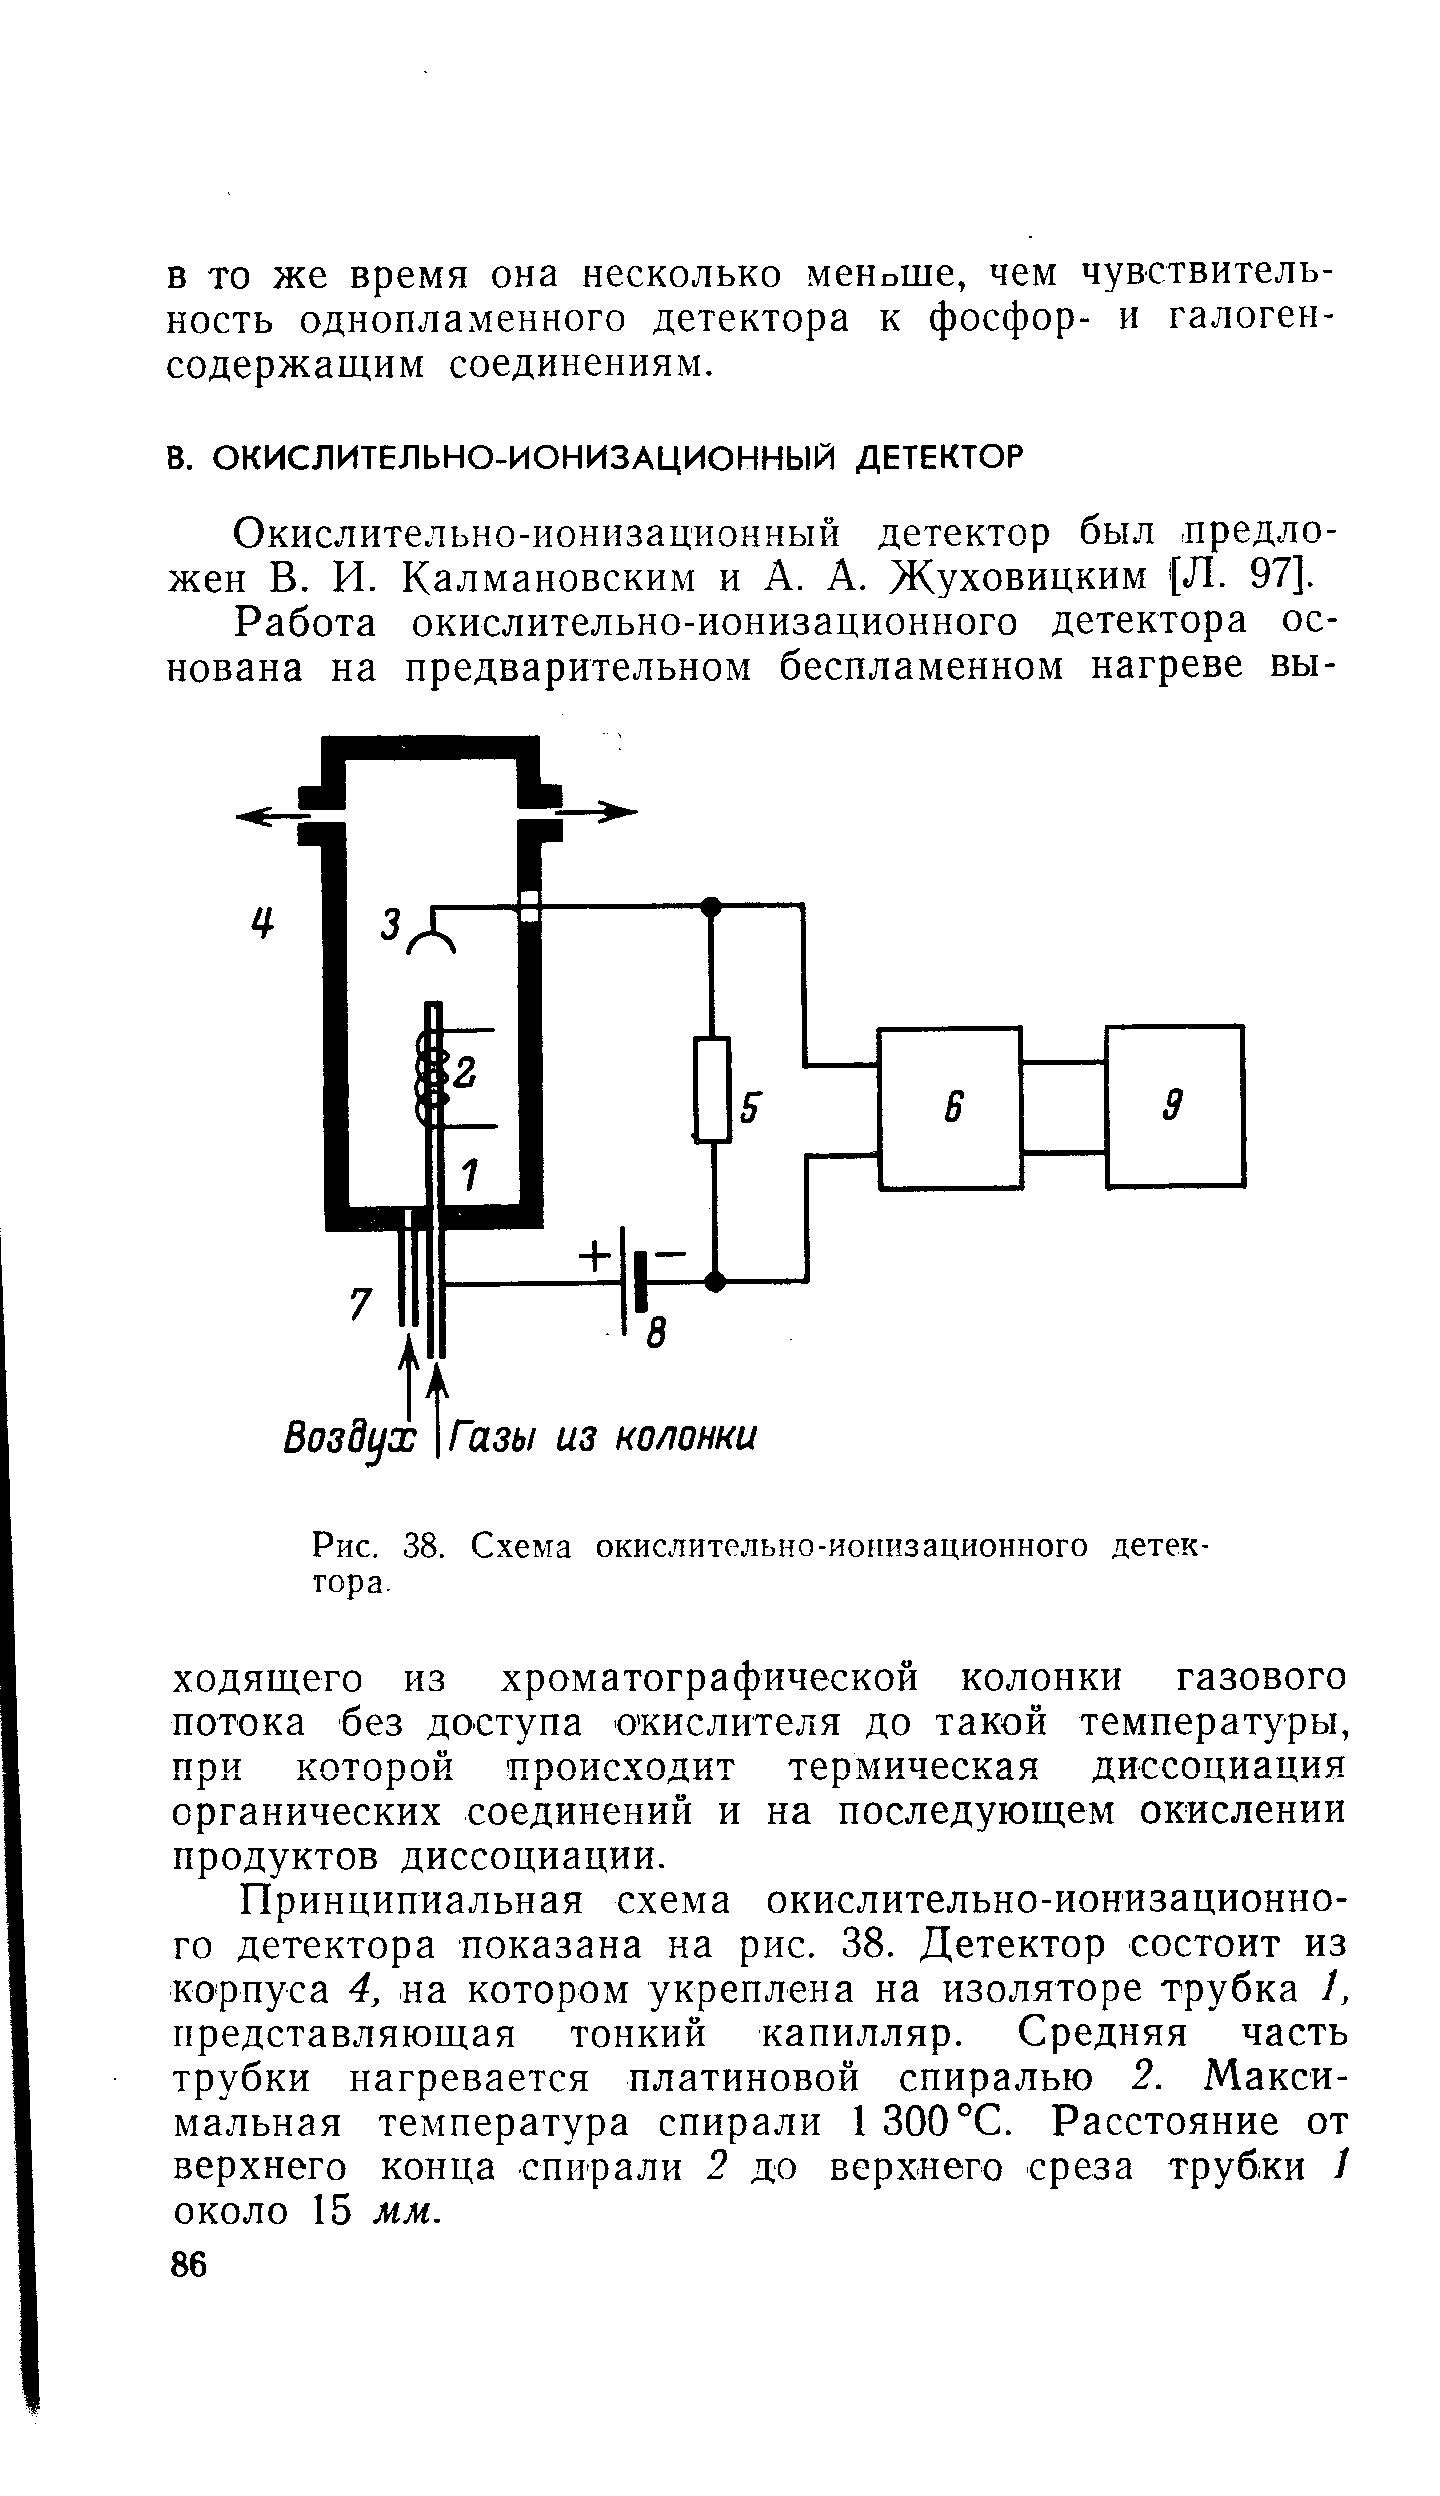 Окислительно-ионизационный детектор был предложен В. И. Калмановским и А. А. Жуховицким (Л. 97].